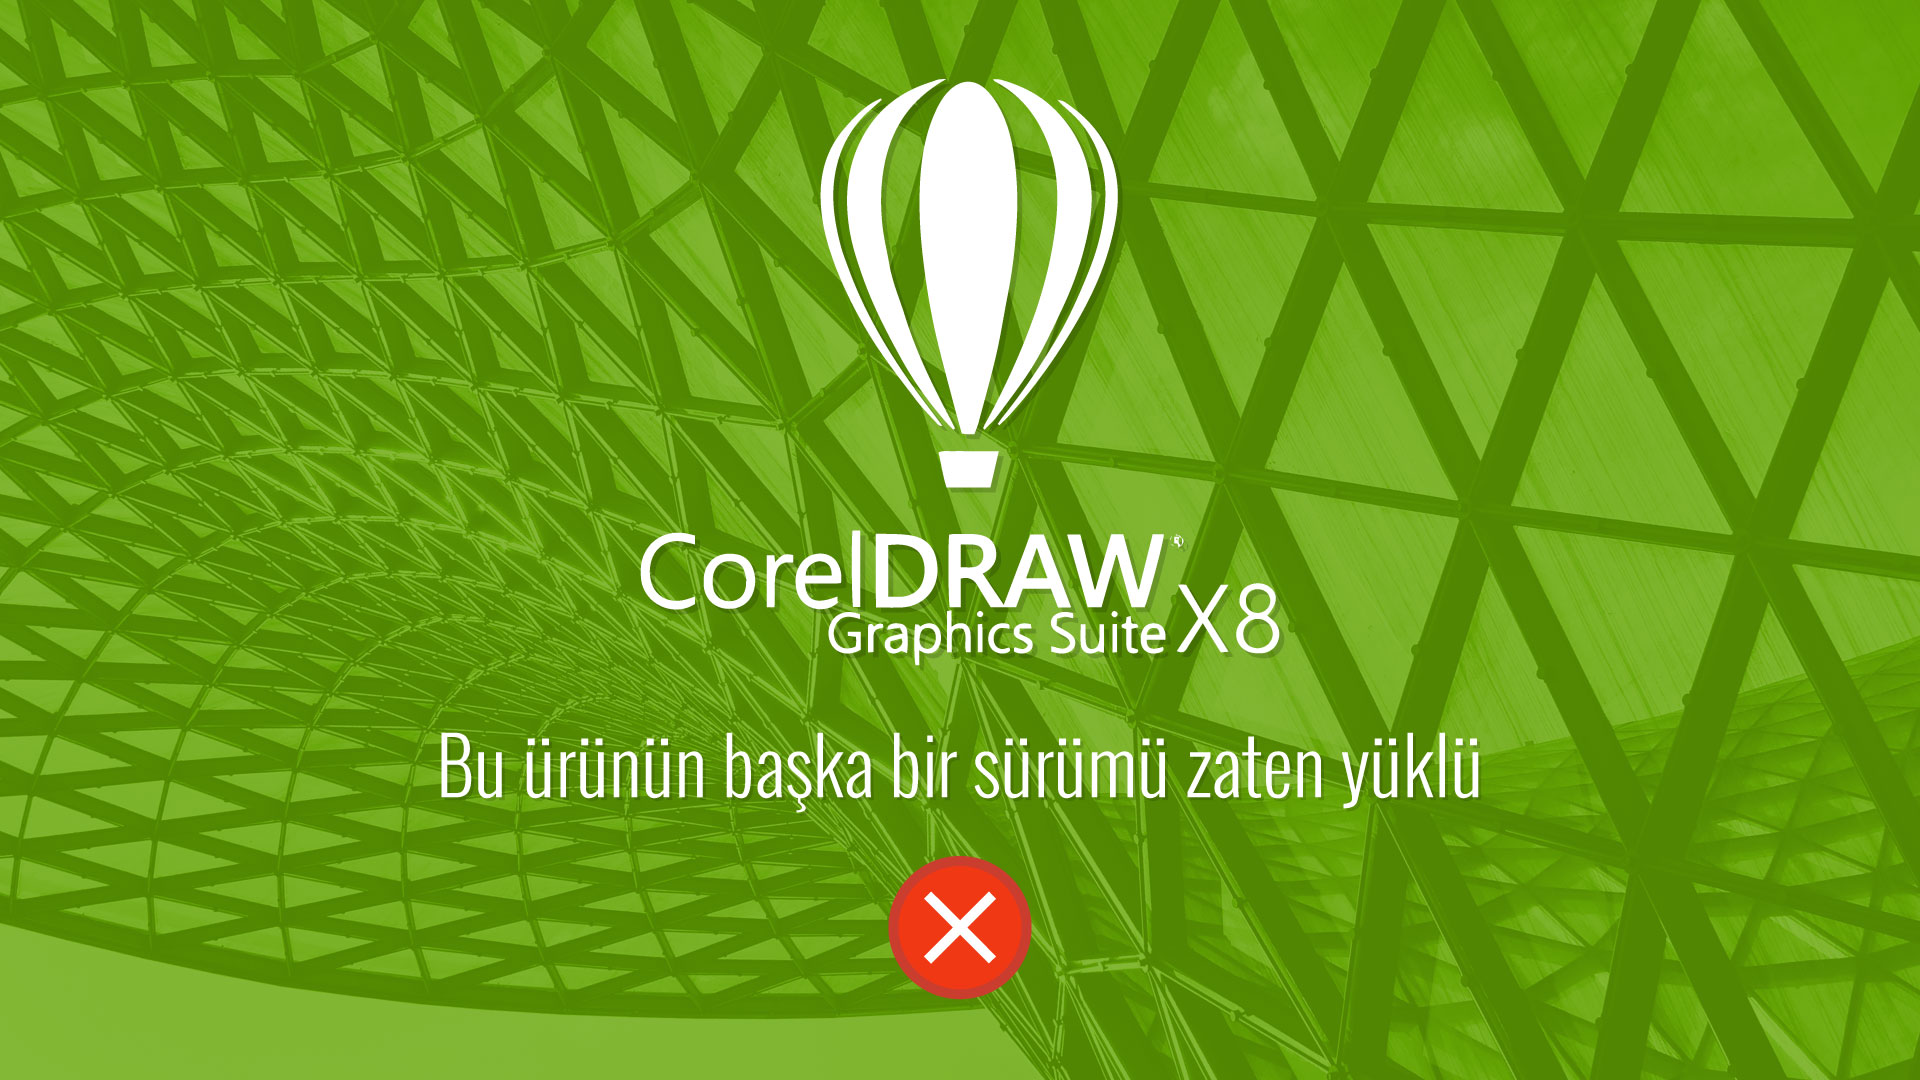 CorelDRAW Graphics Suite X8 kurarken karşılaşılan "Bu ürünün başka bir sürümü zaten yüklü" mesajı ve çözümü.